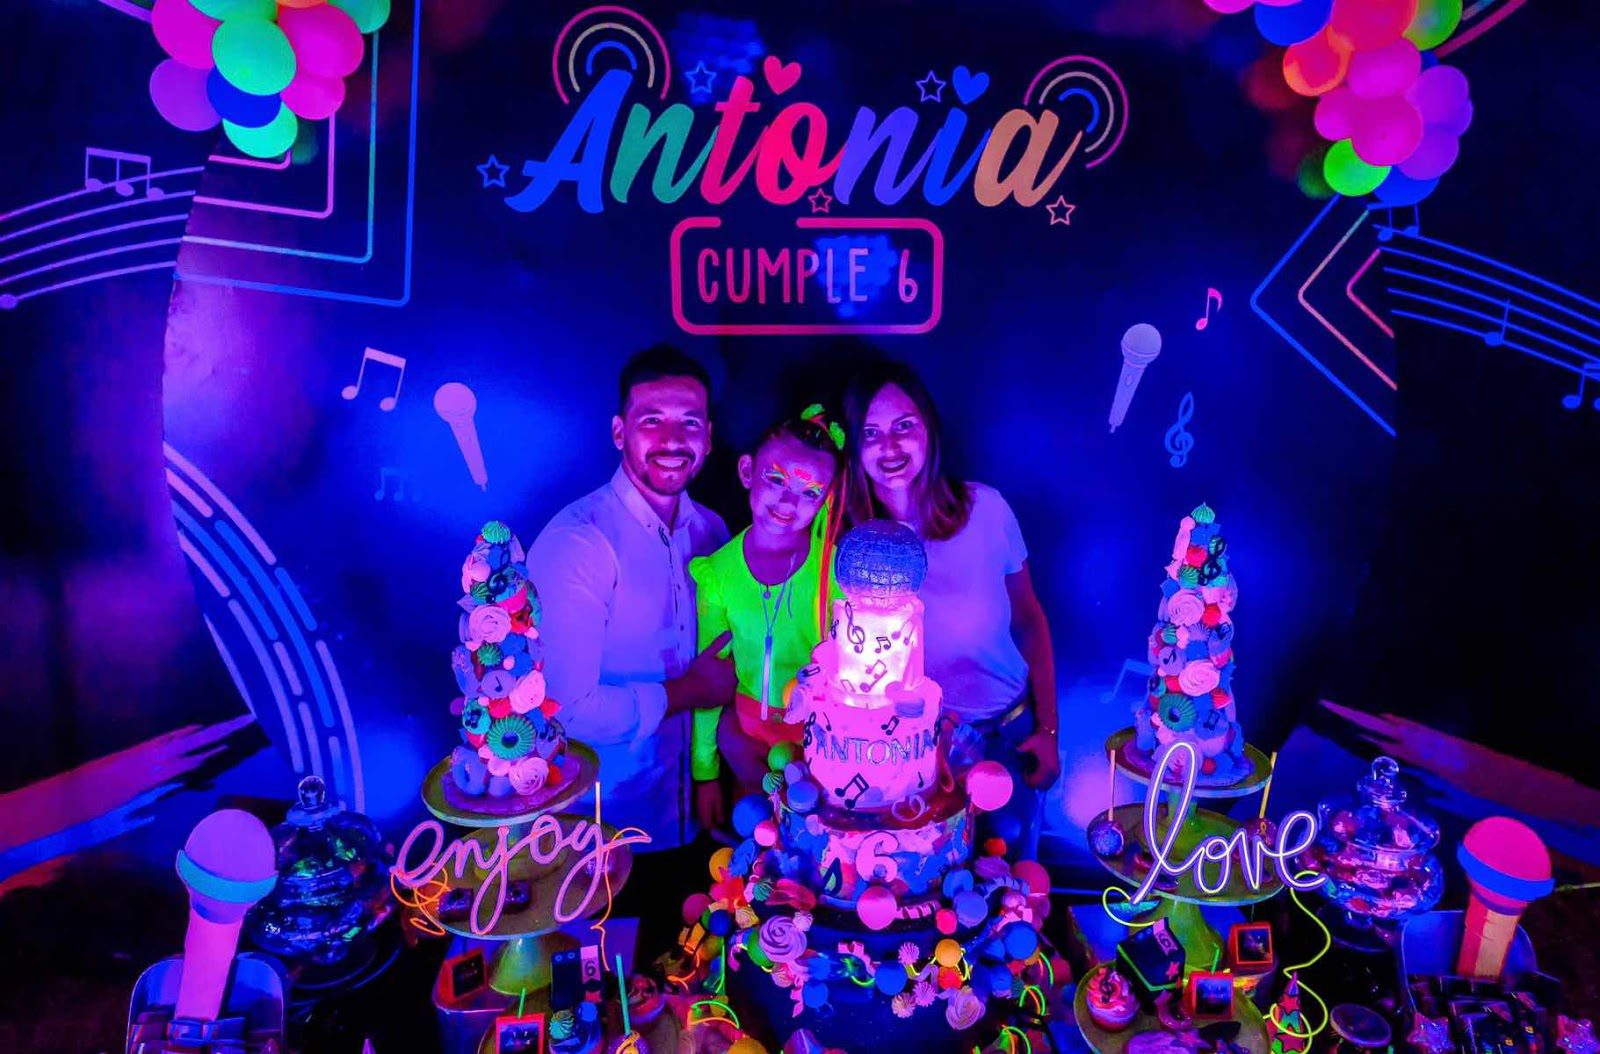 Chiquiteca Neon - Vendemos Felicidad